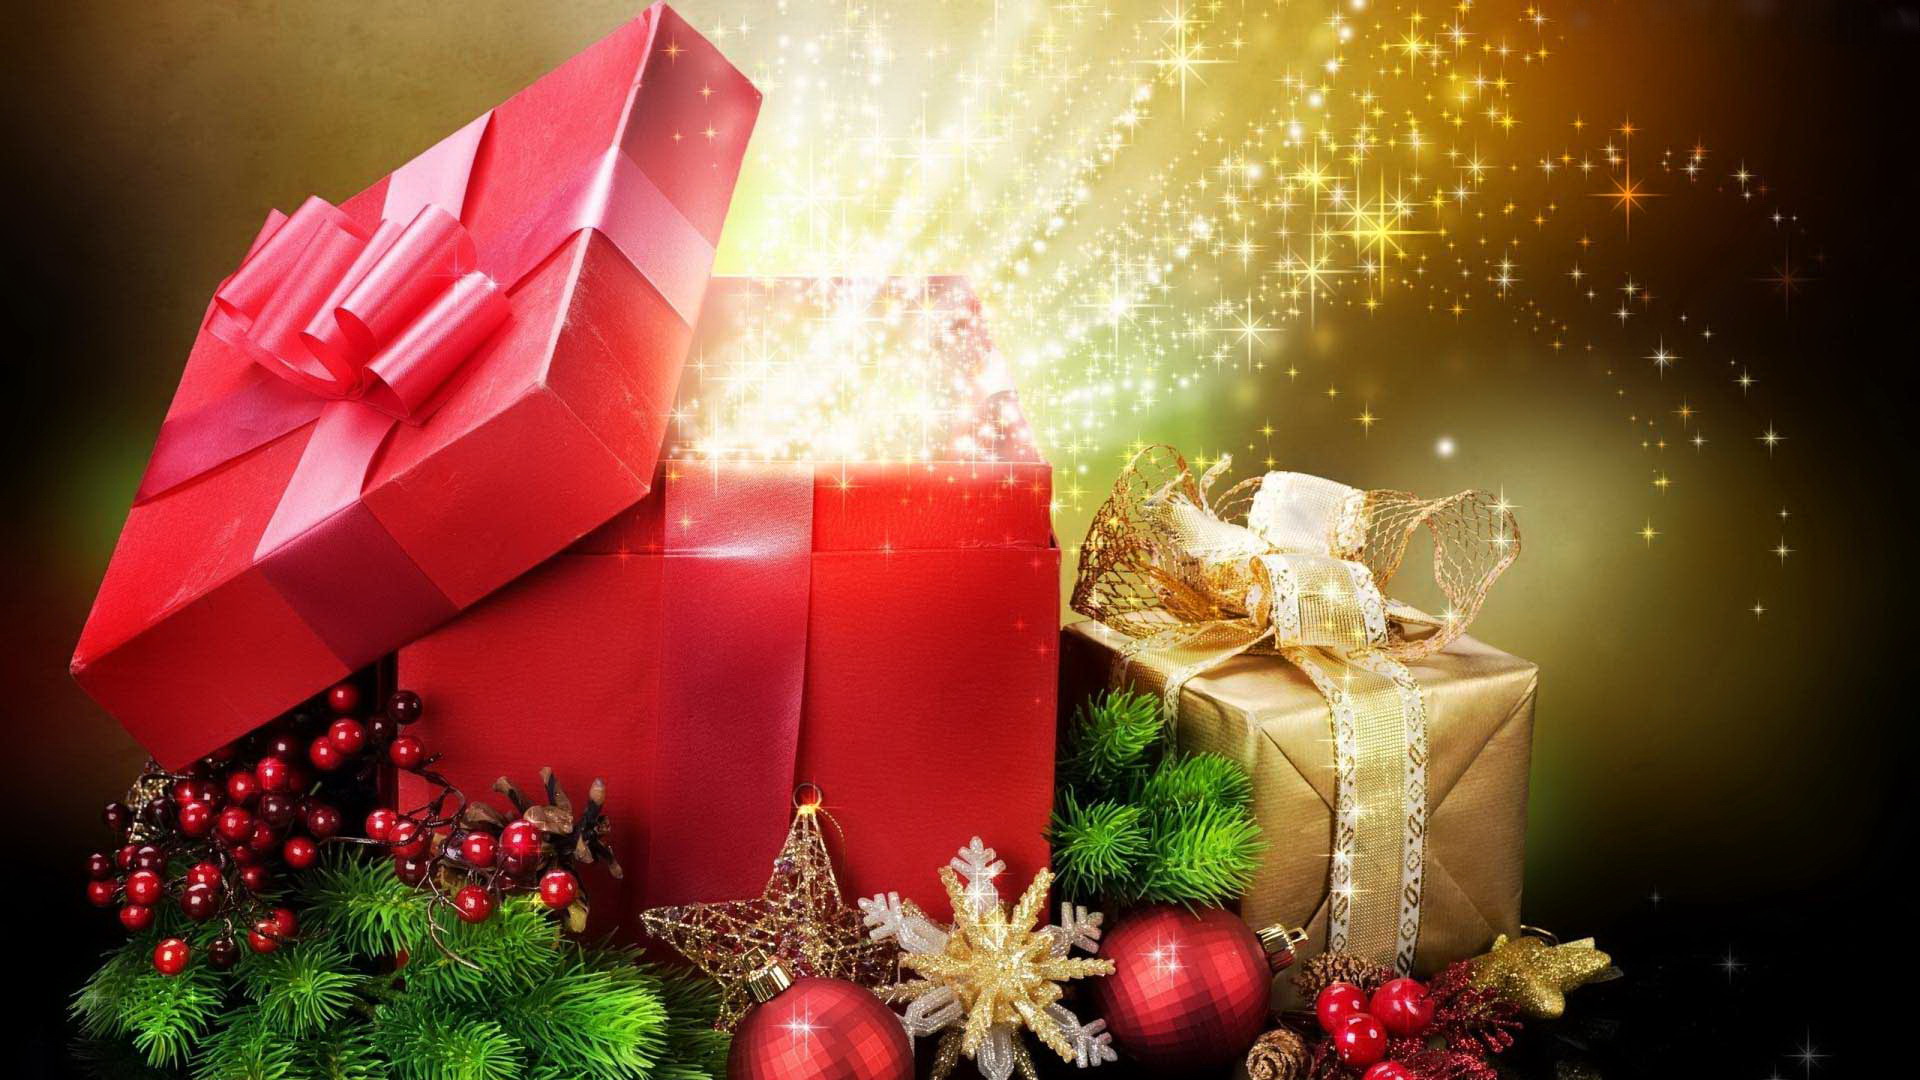 A Christmas present is a symbol | GnosticWarrior.com